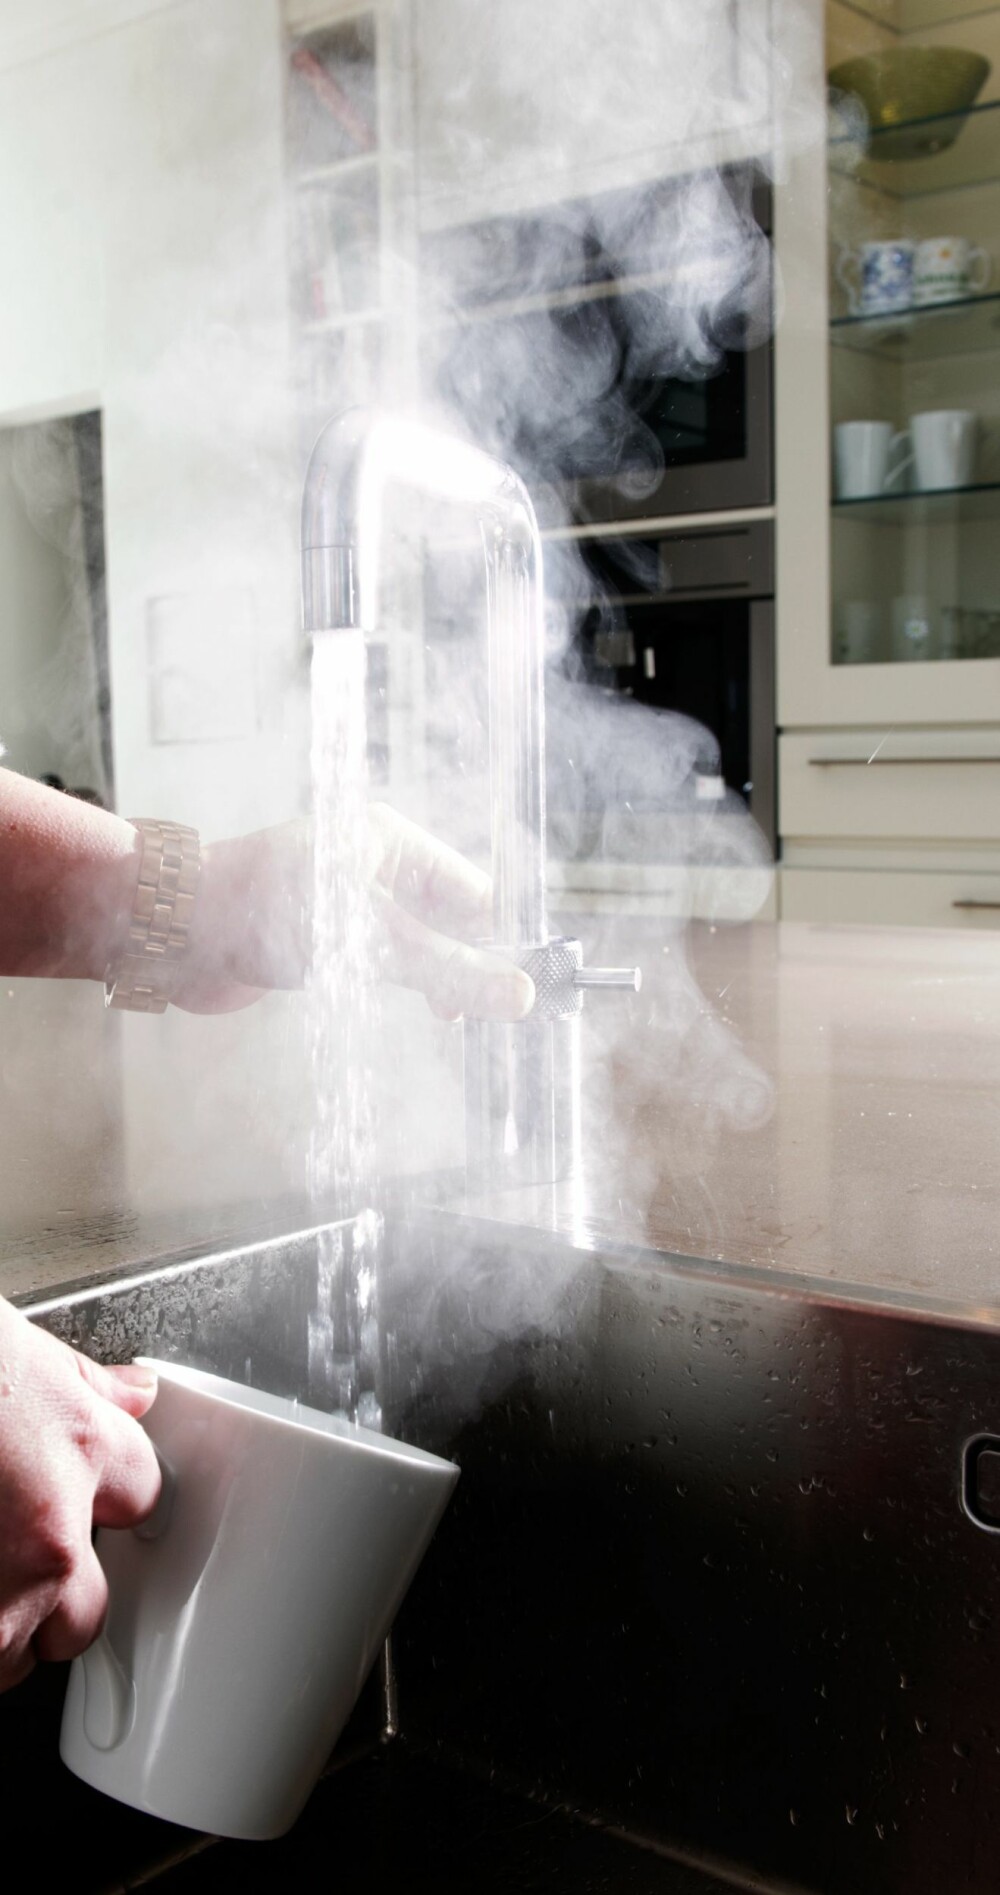 RETT I KOPPEN: Med kokende vann fra kranen får du varmt tevann rett i koppen.